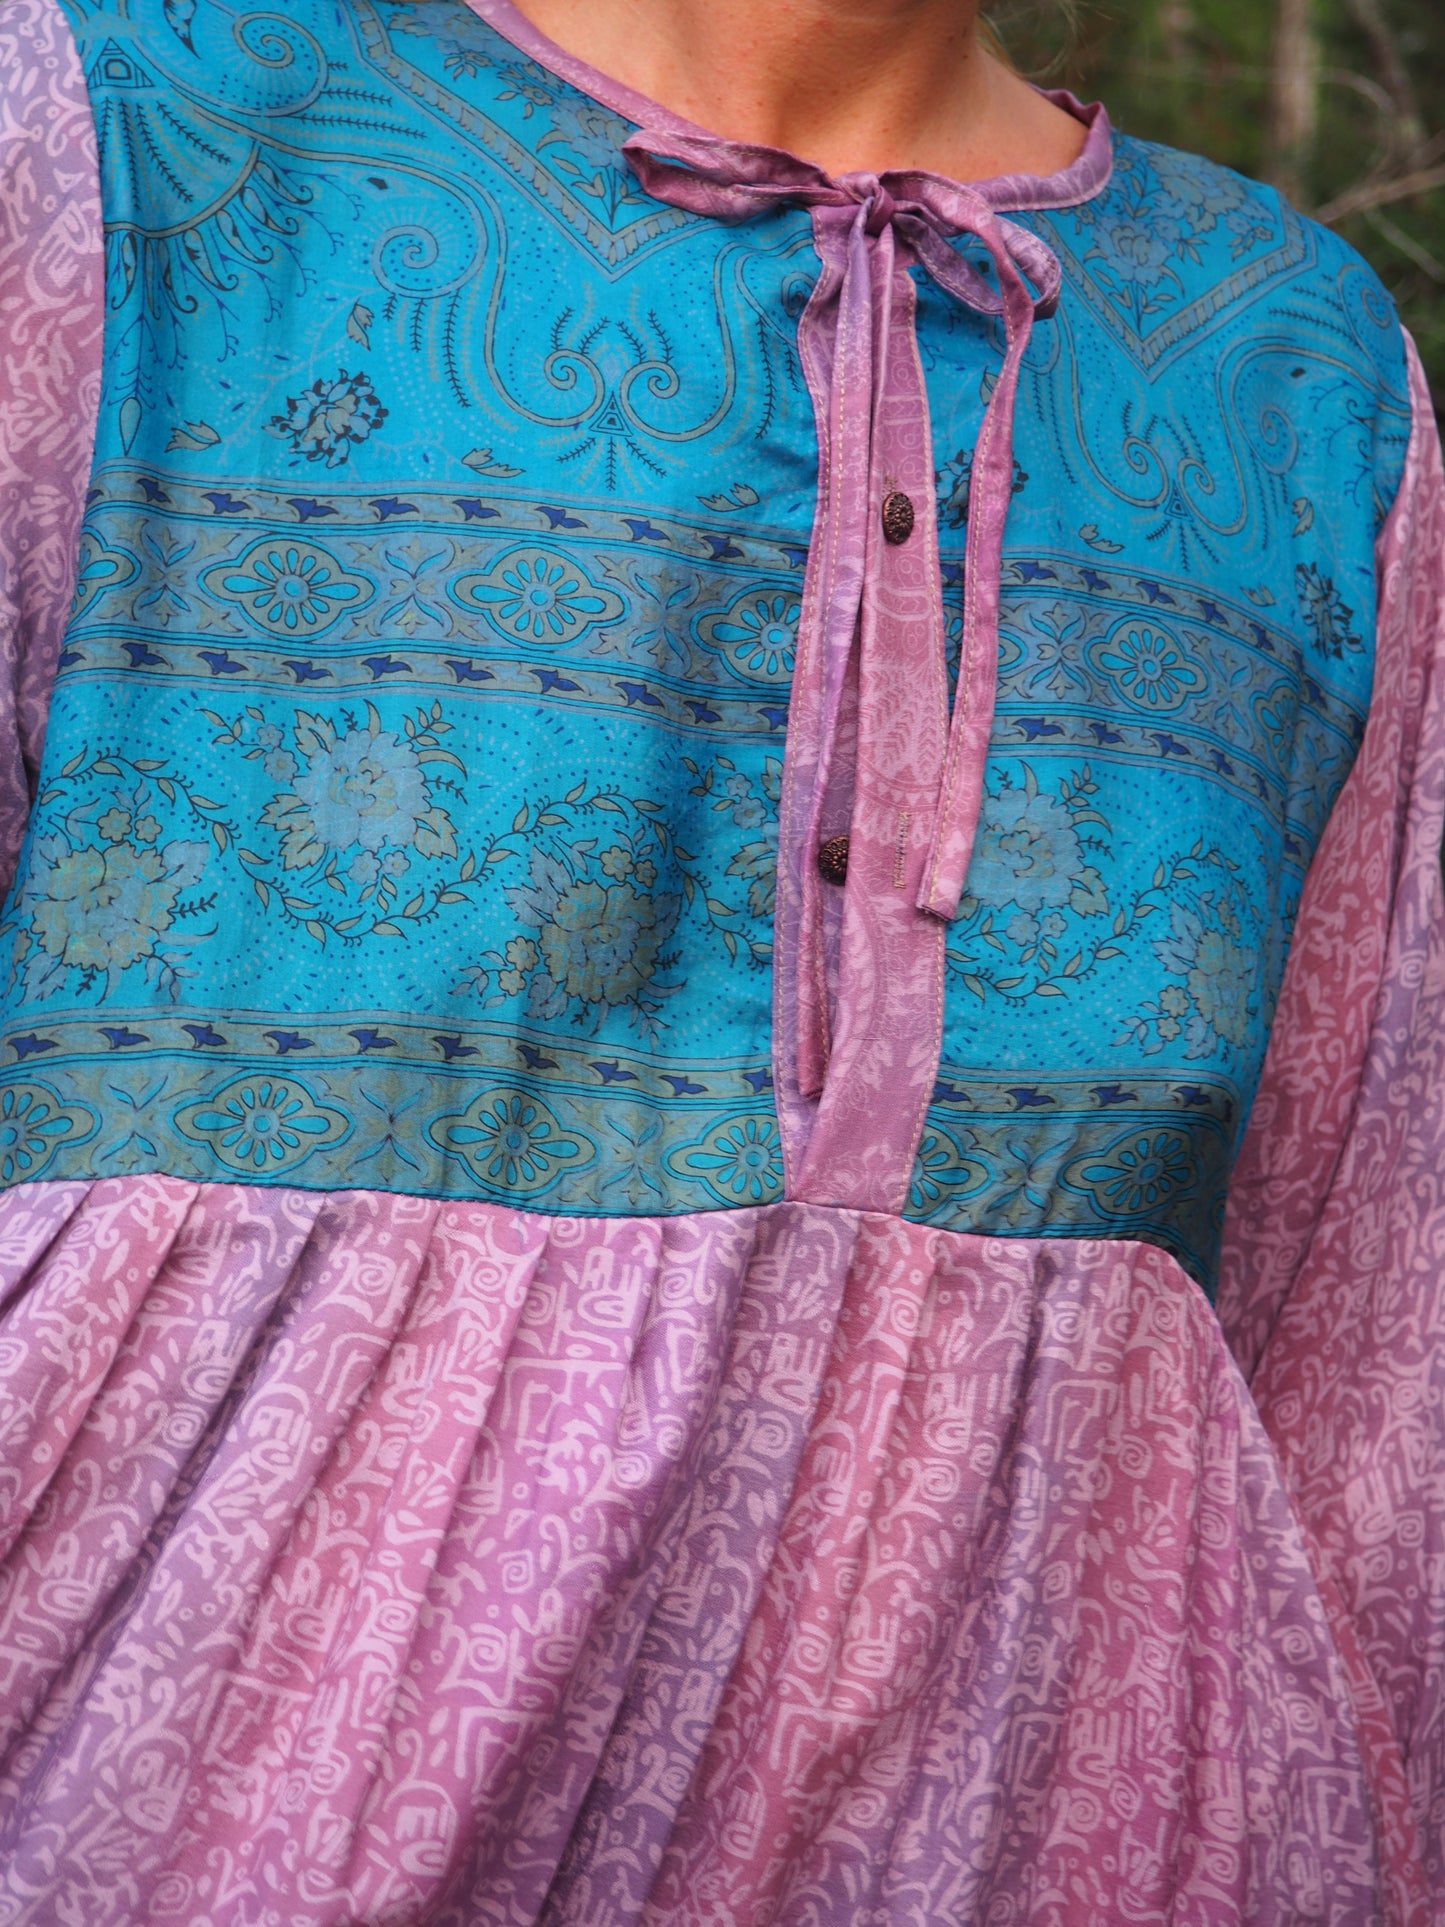 Vintage Indian sari dress up-cycled by Vagabond Ibiza